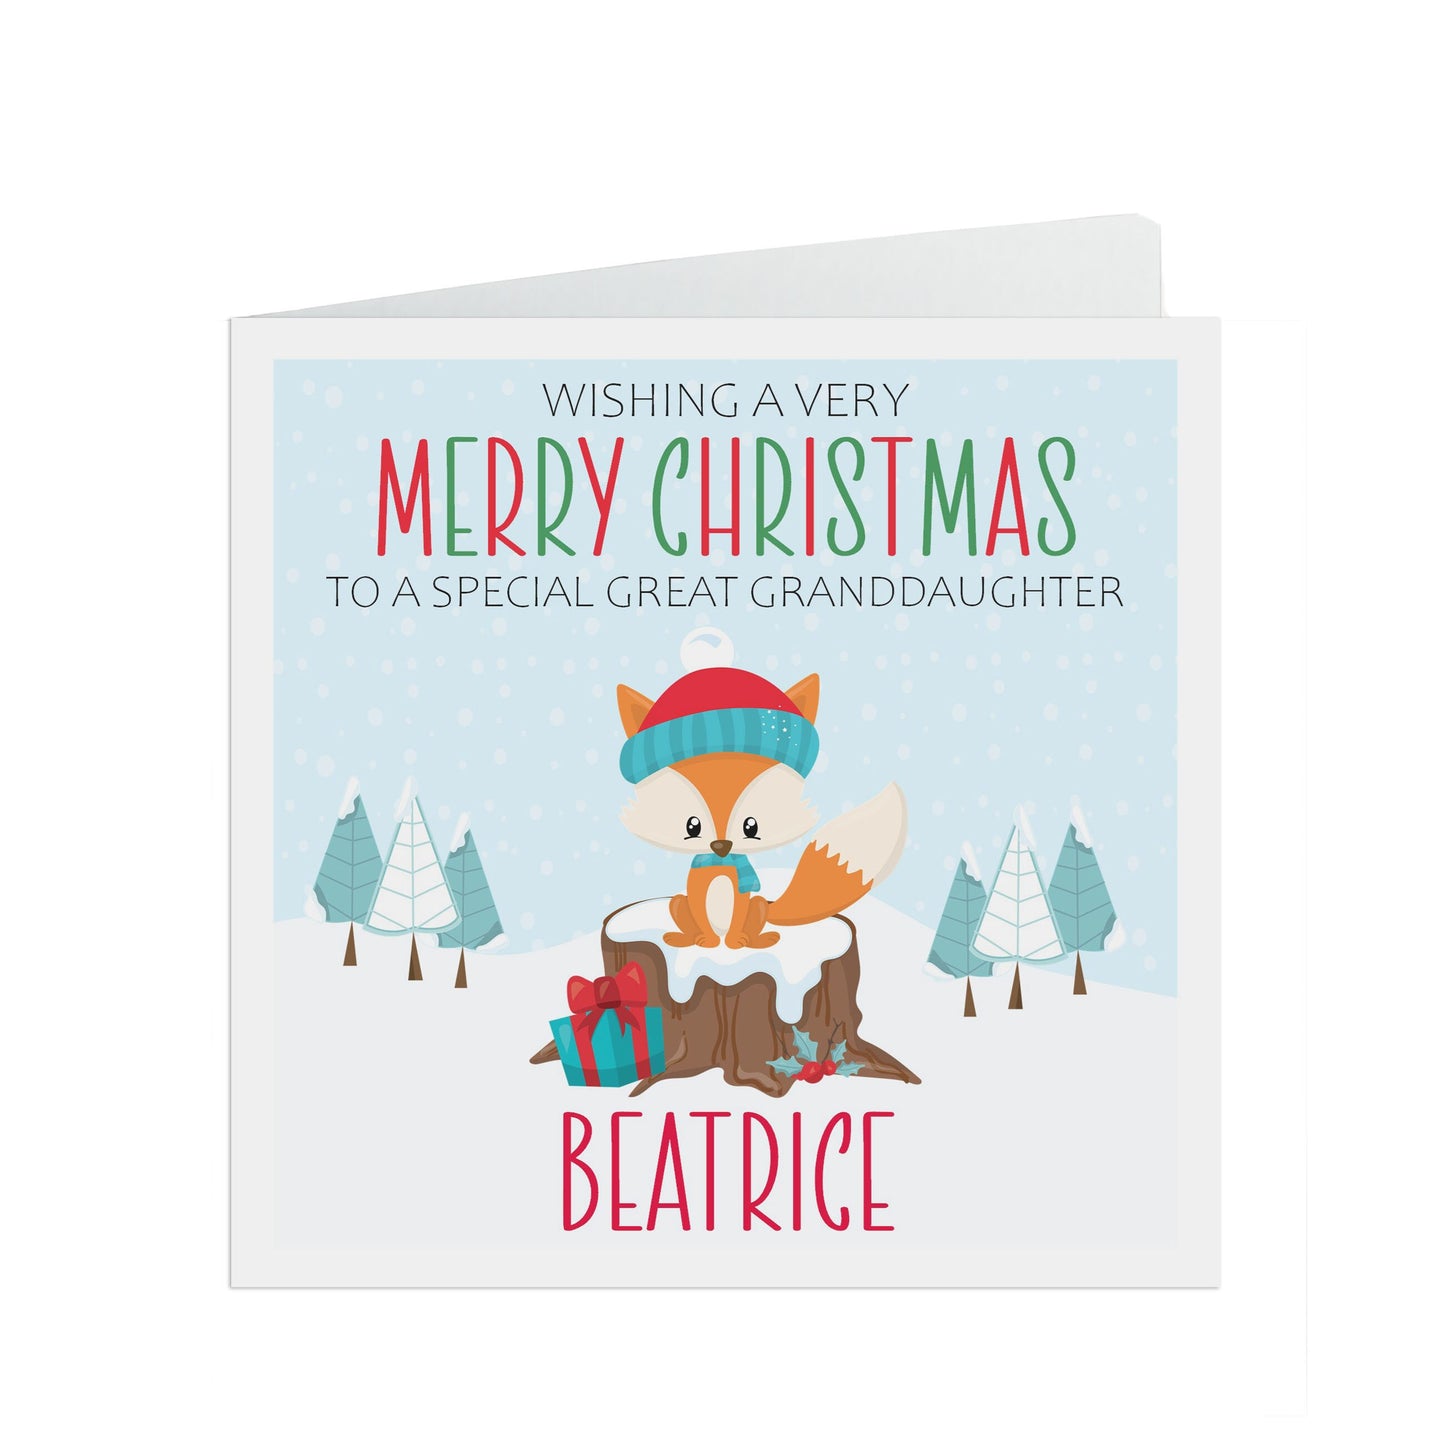 Great Granddaughter Christmas Card - Personalised Christmas Keepsake - Lots Of Designs